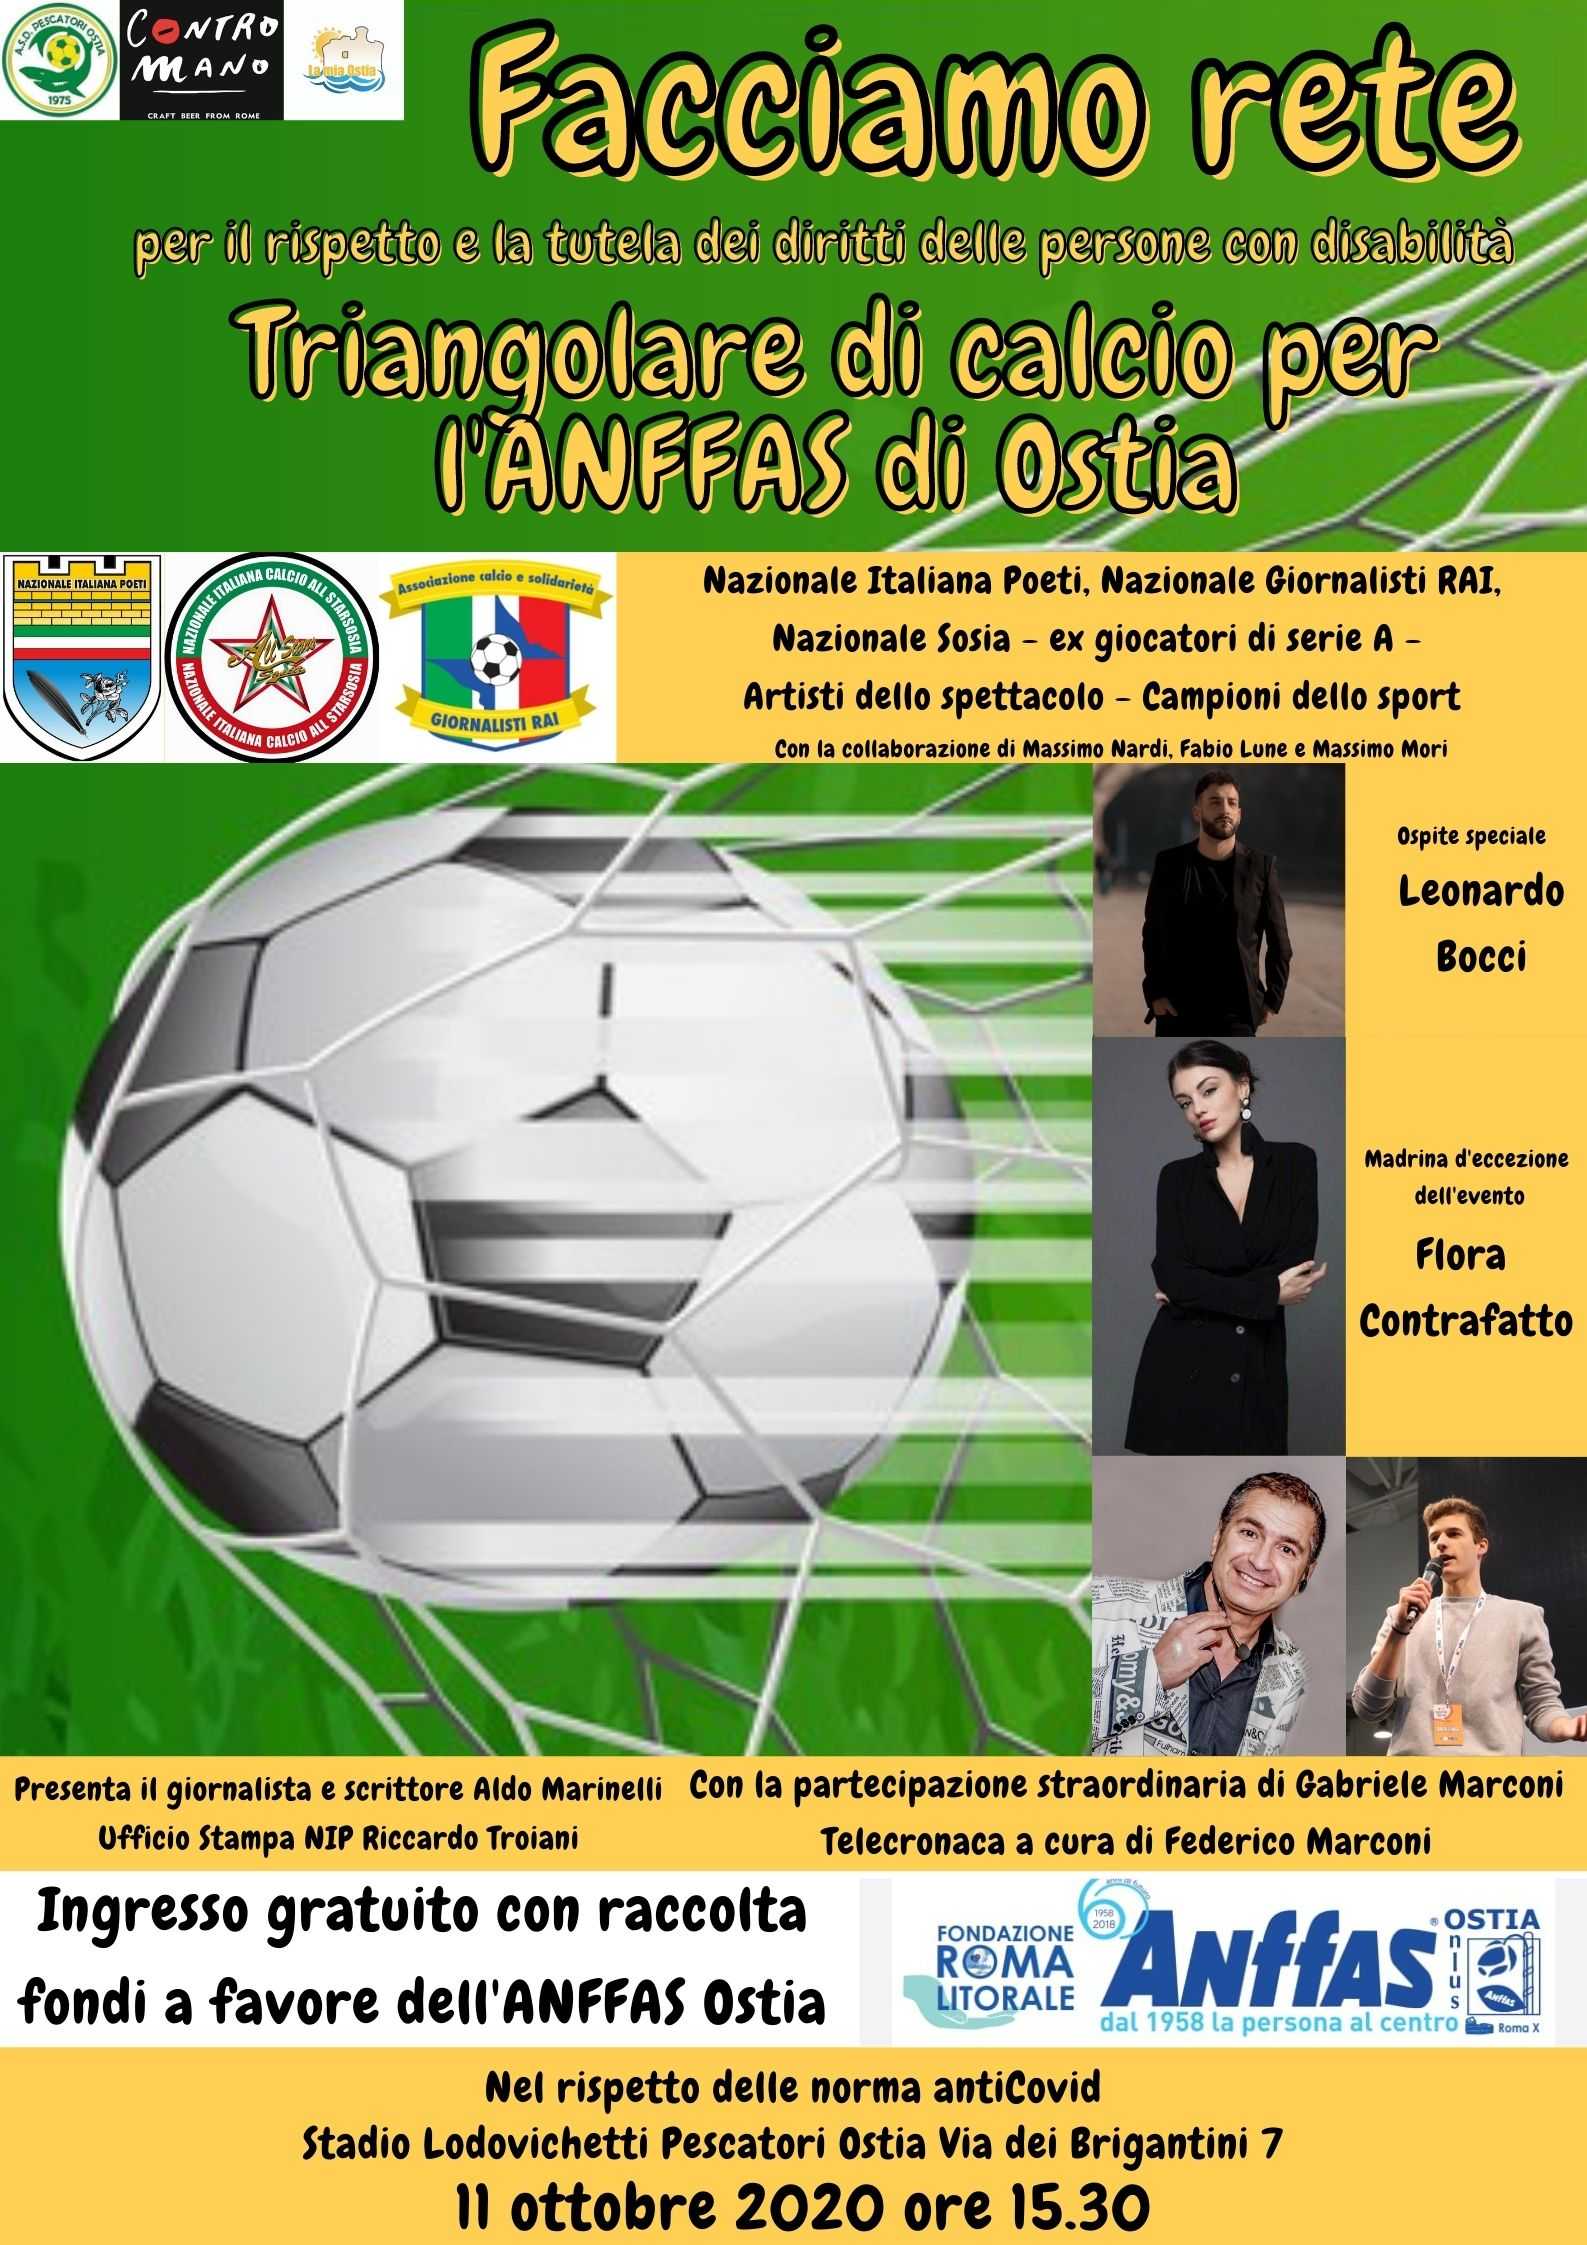 Facciamo rete, il triangolare di calcio organizzato dalla Nazionale Italiana Poeti